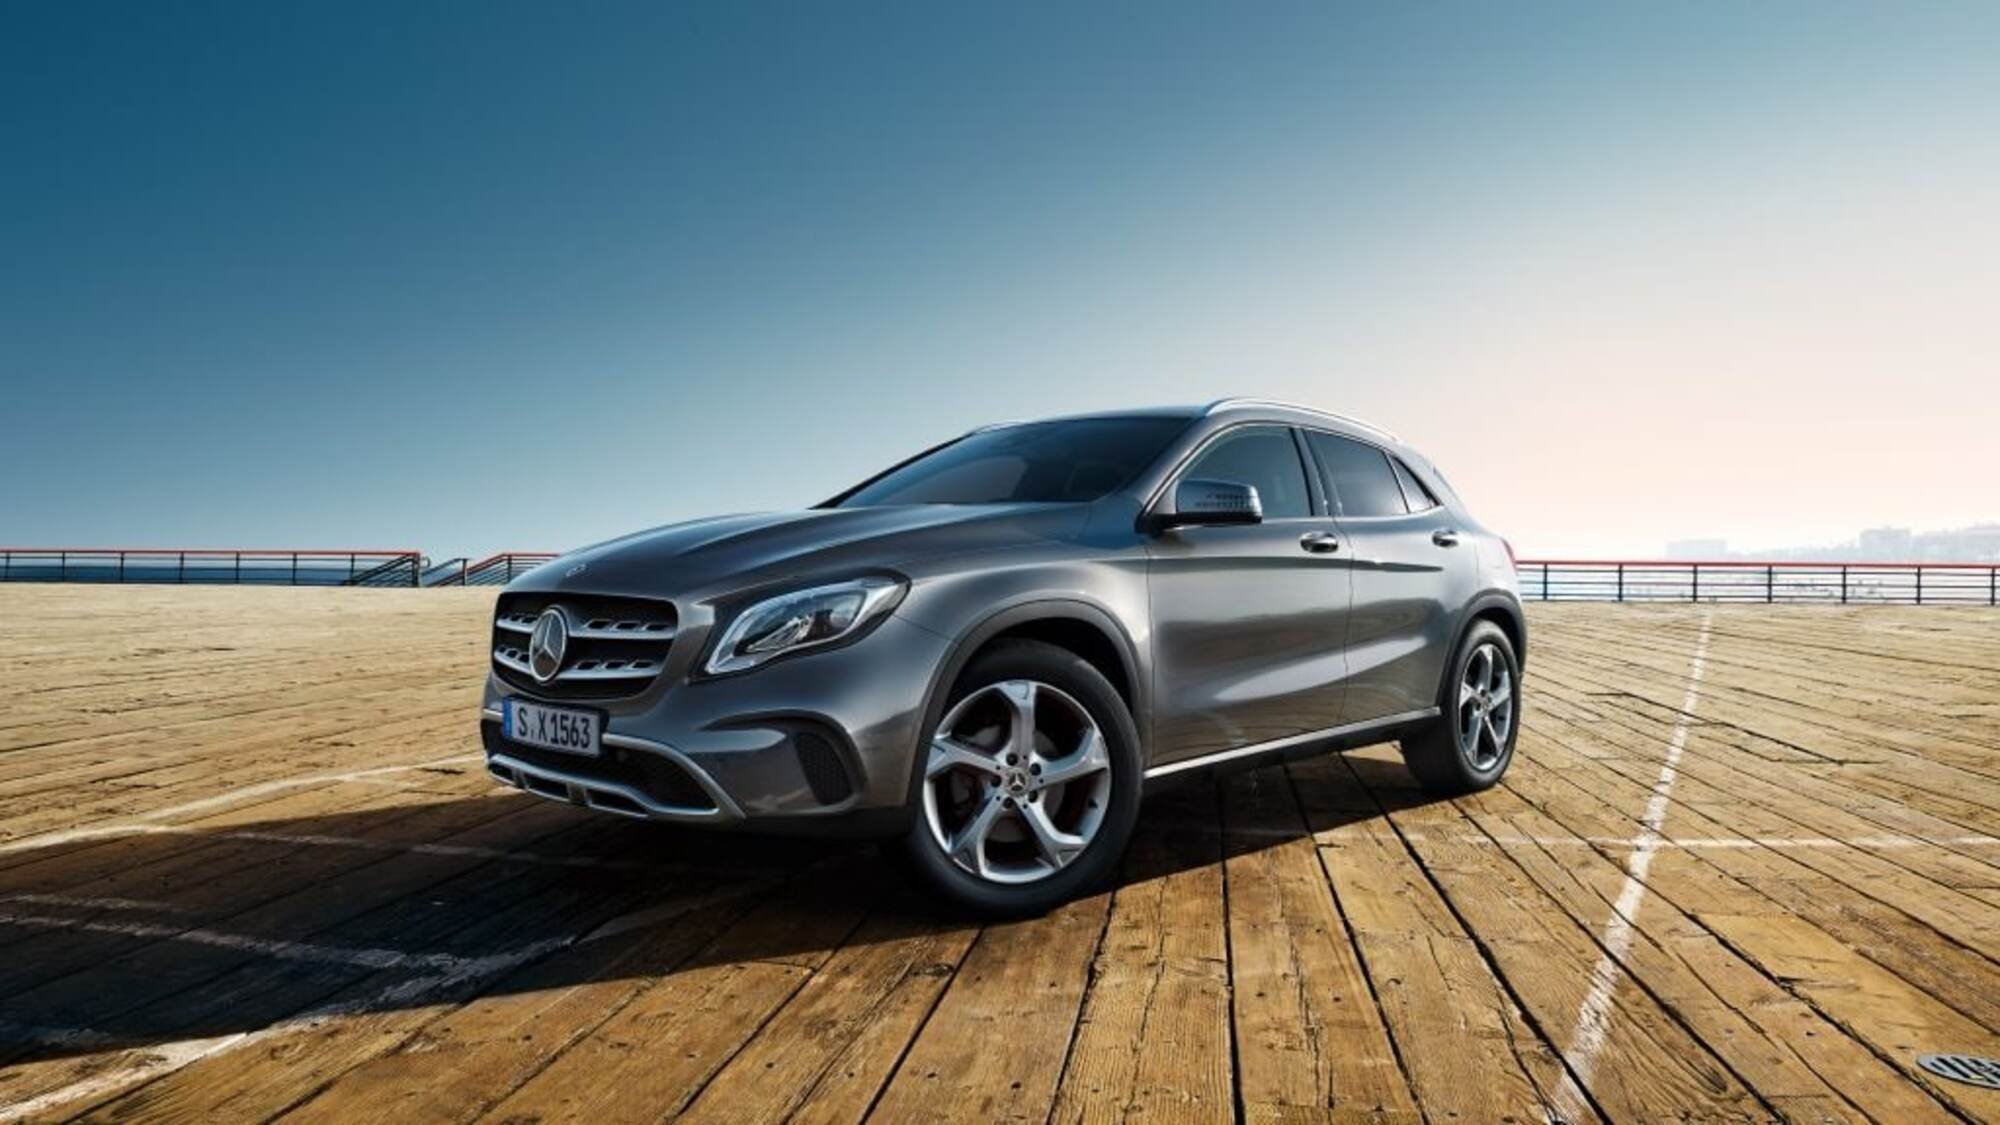 Promozione acquisto Mercedes GLA: le offerte con incentivi e sconti